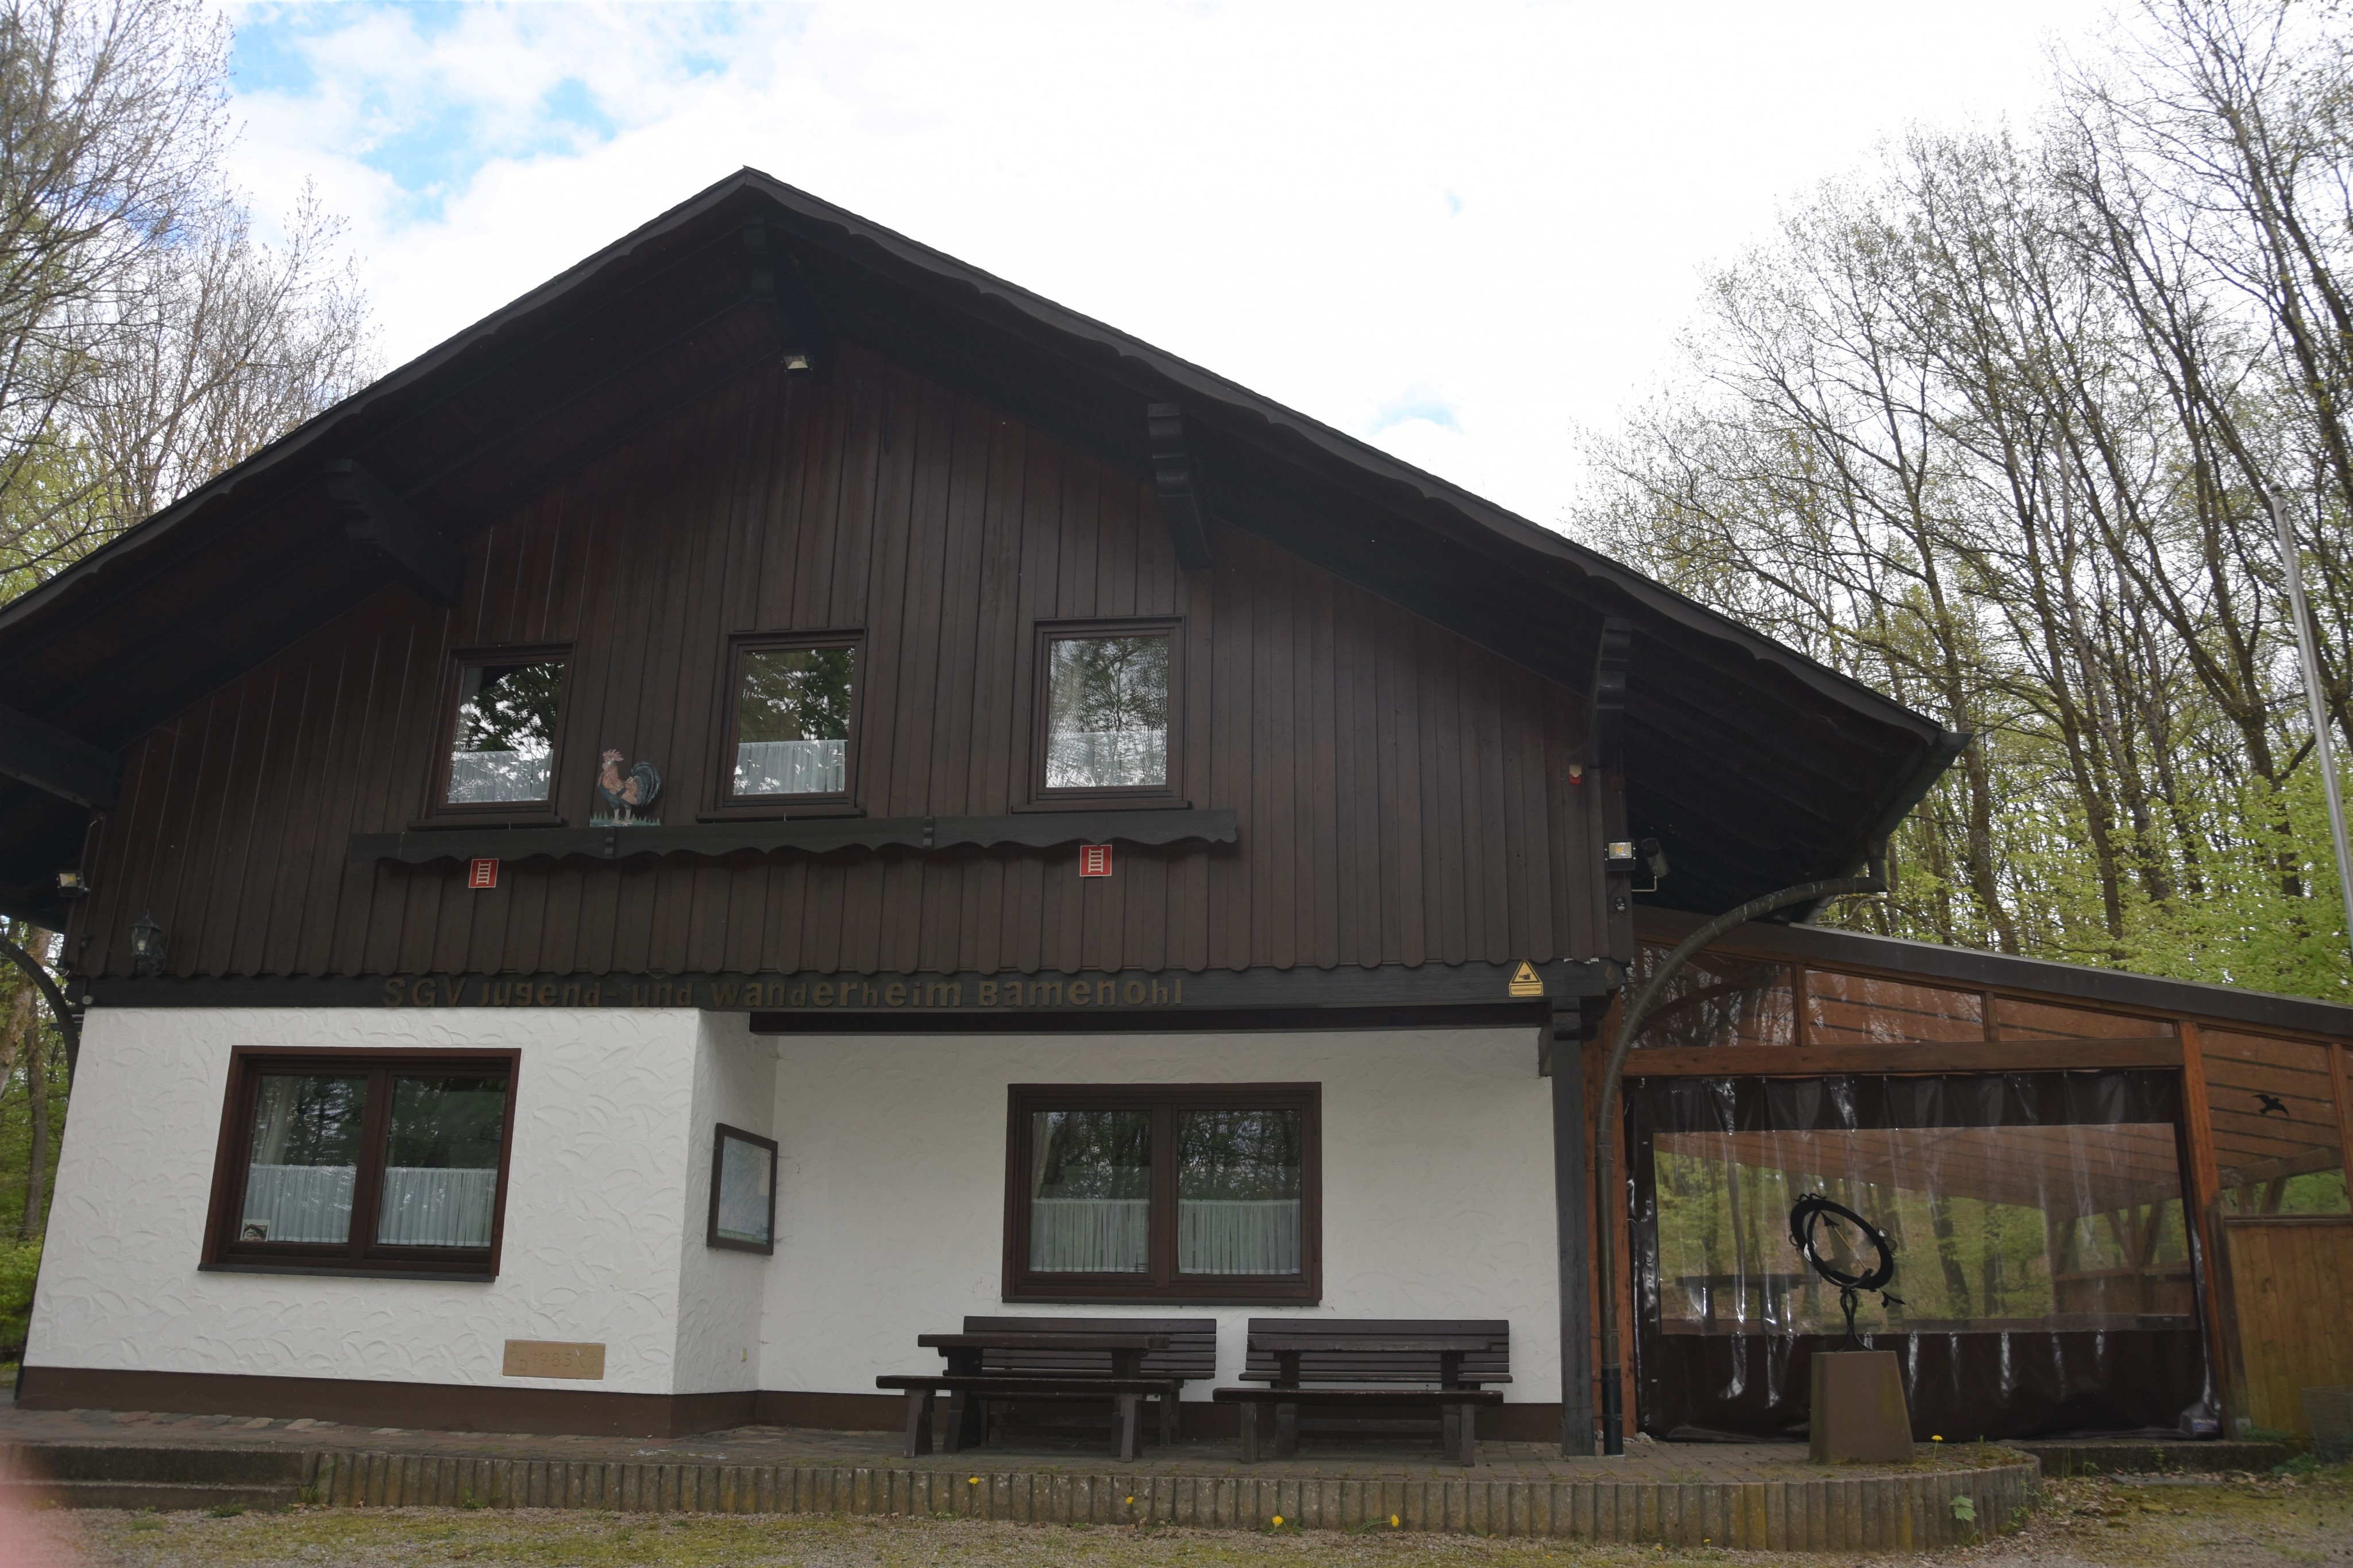 Zehn bis 15 Prozent der Übernachtungen in der Gemeinde Finnentrop finden in der SGV-Hütte Bamenohl statt. von Nicole Voss